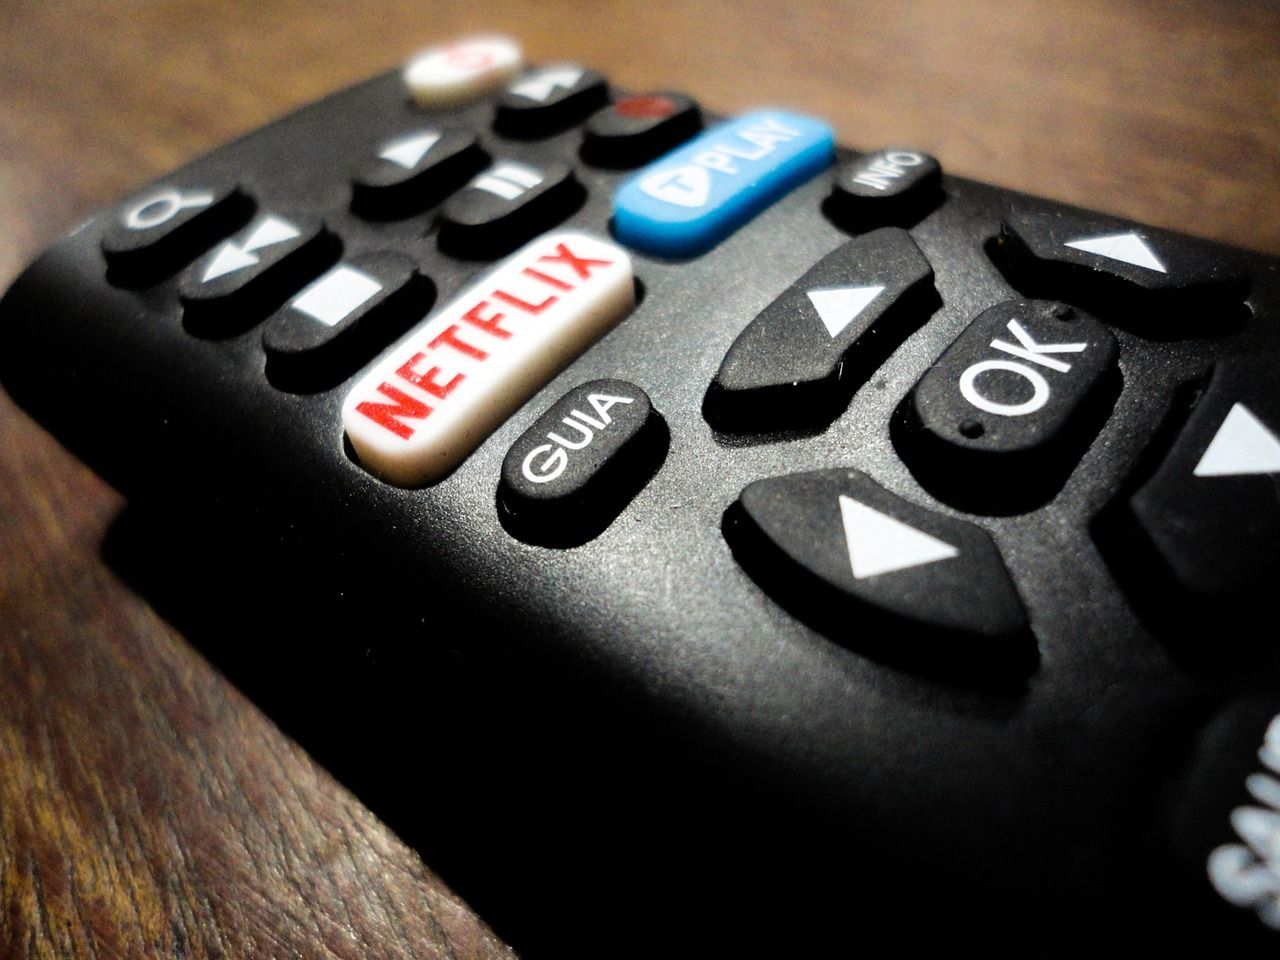 Netflix consomme 15% de la bande passante mondiale sur internet